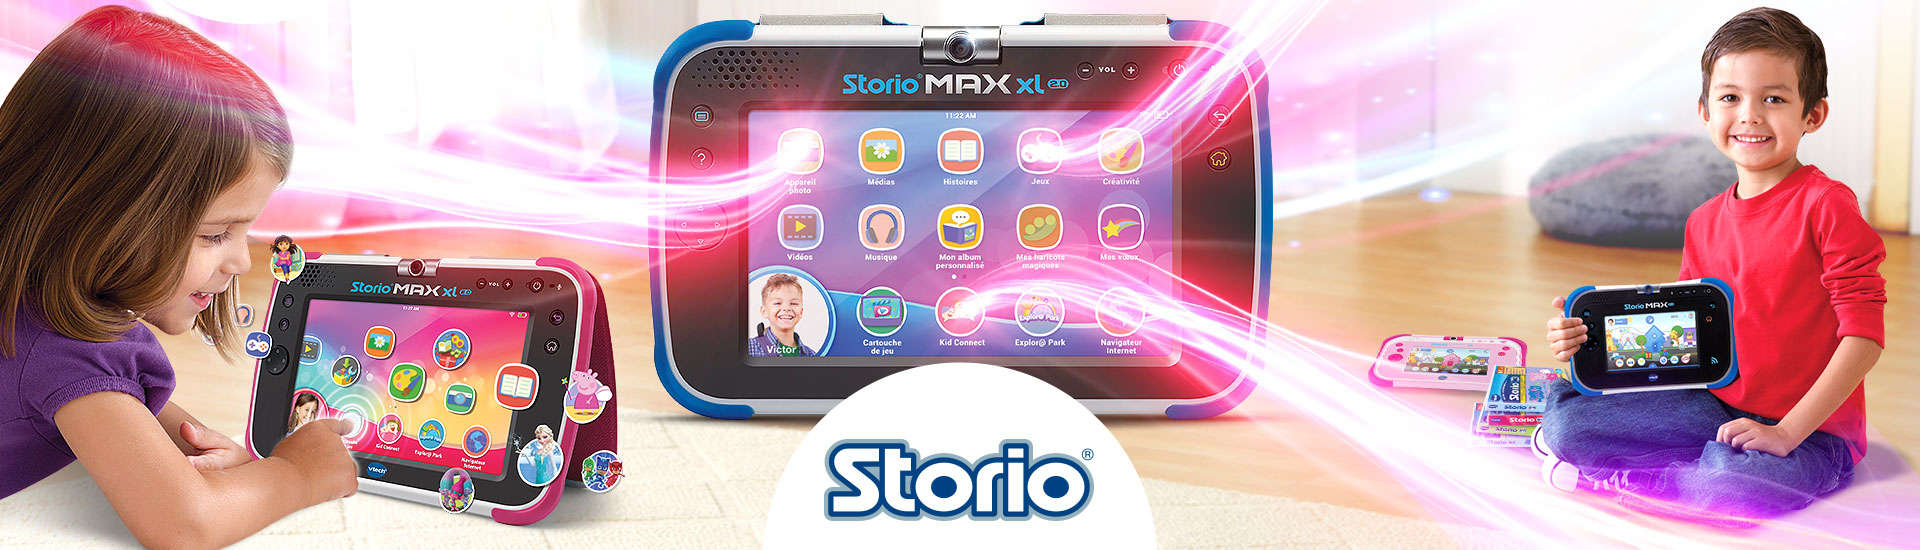 Tablette Storio Max XL 2.0 bleue VTech : King Jouet, Tablettes et  téléphones VTech - Jeux électroniques